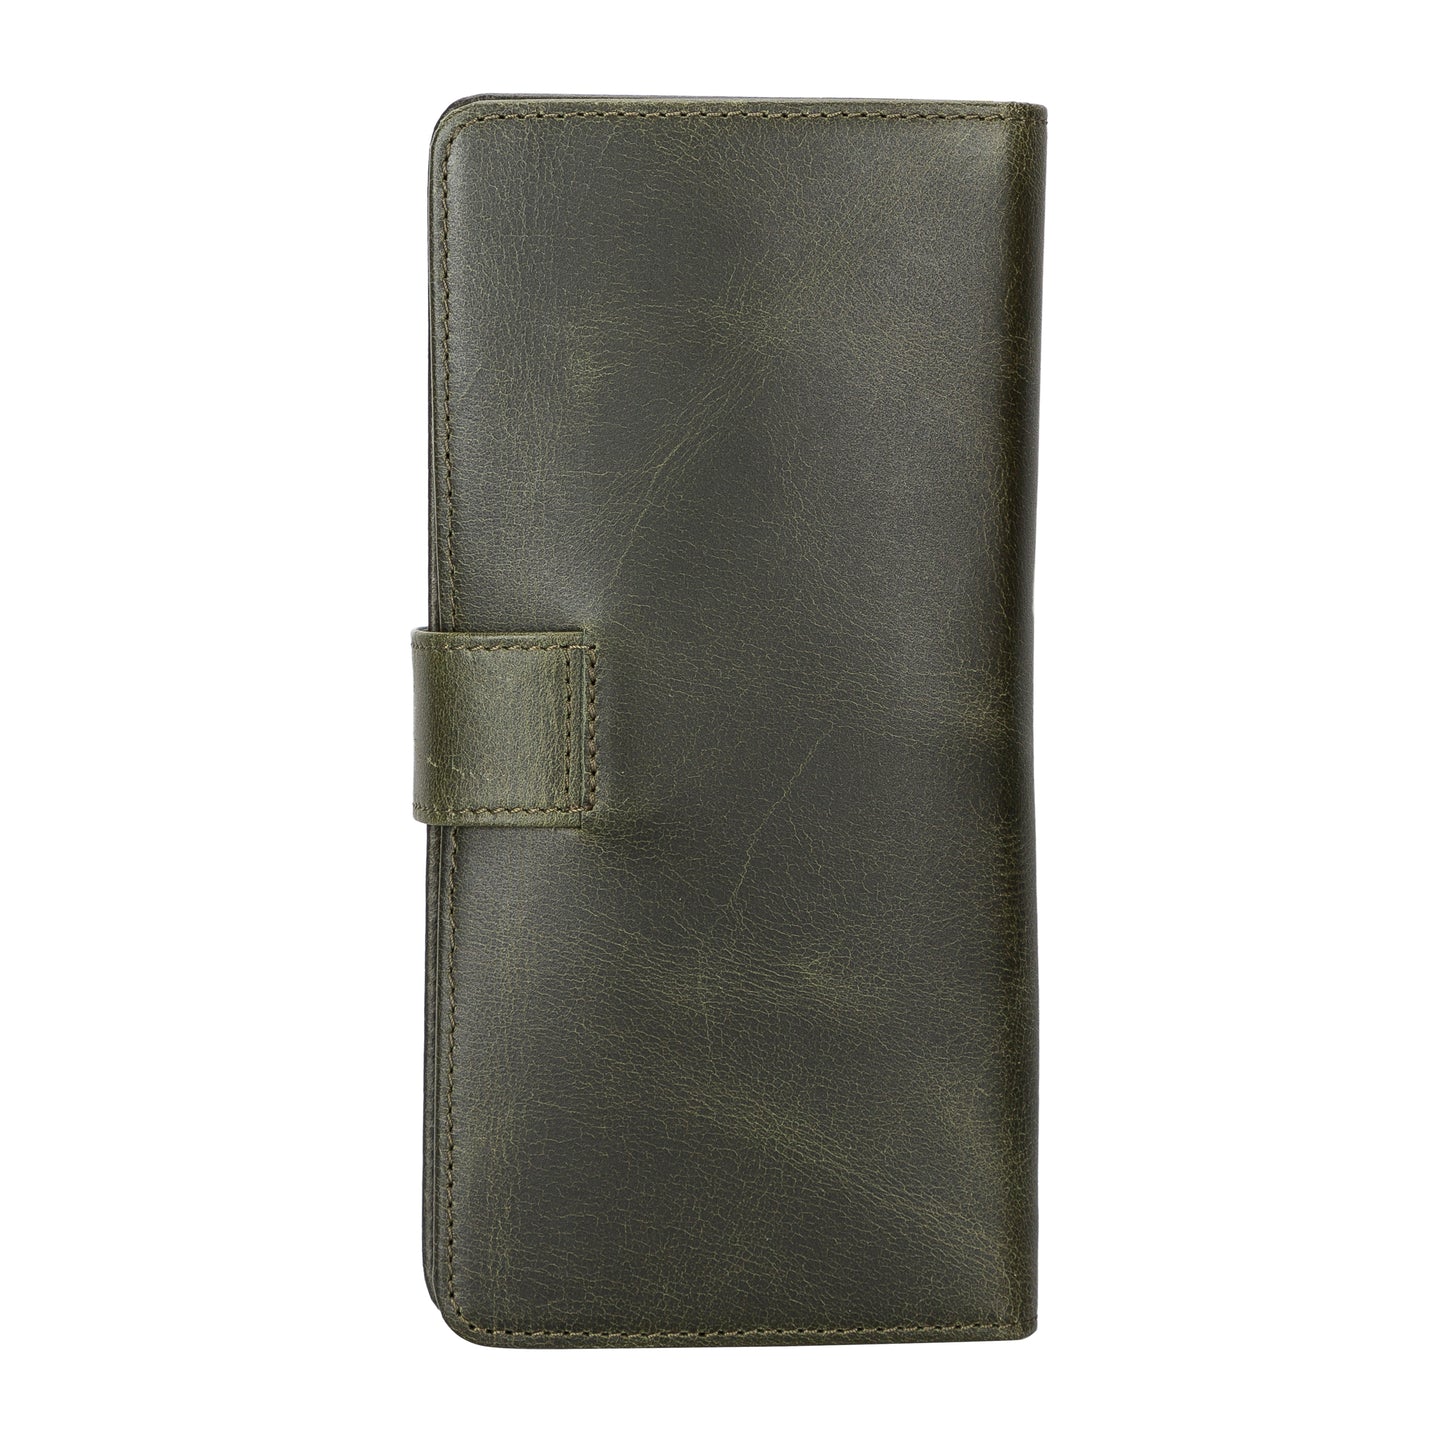 Coppet Leather Women Wallet - Green